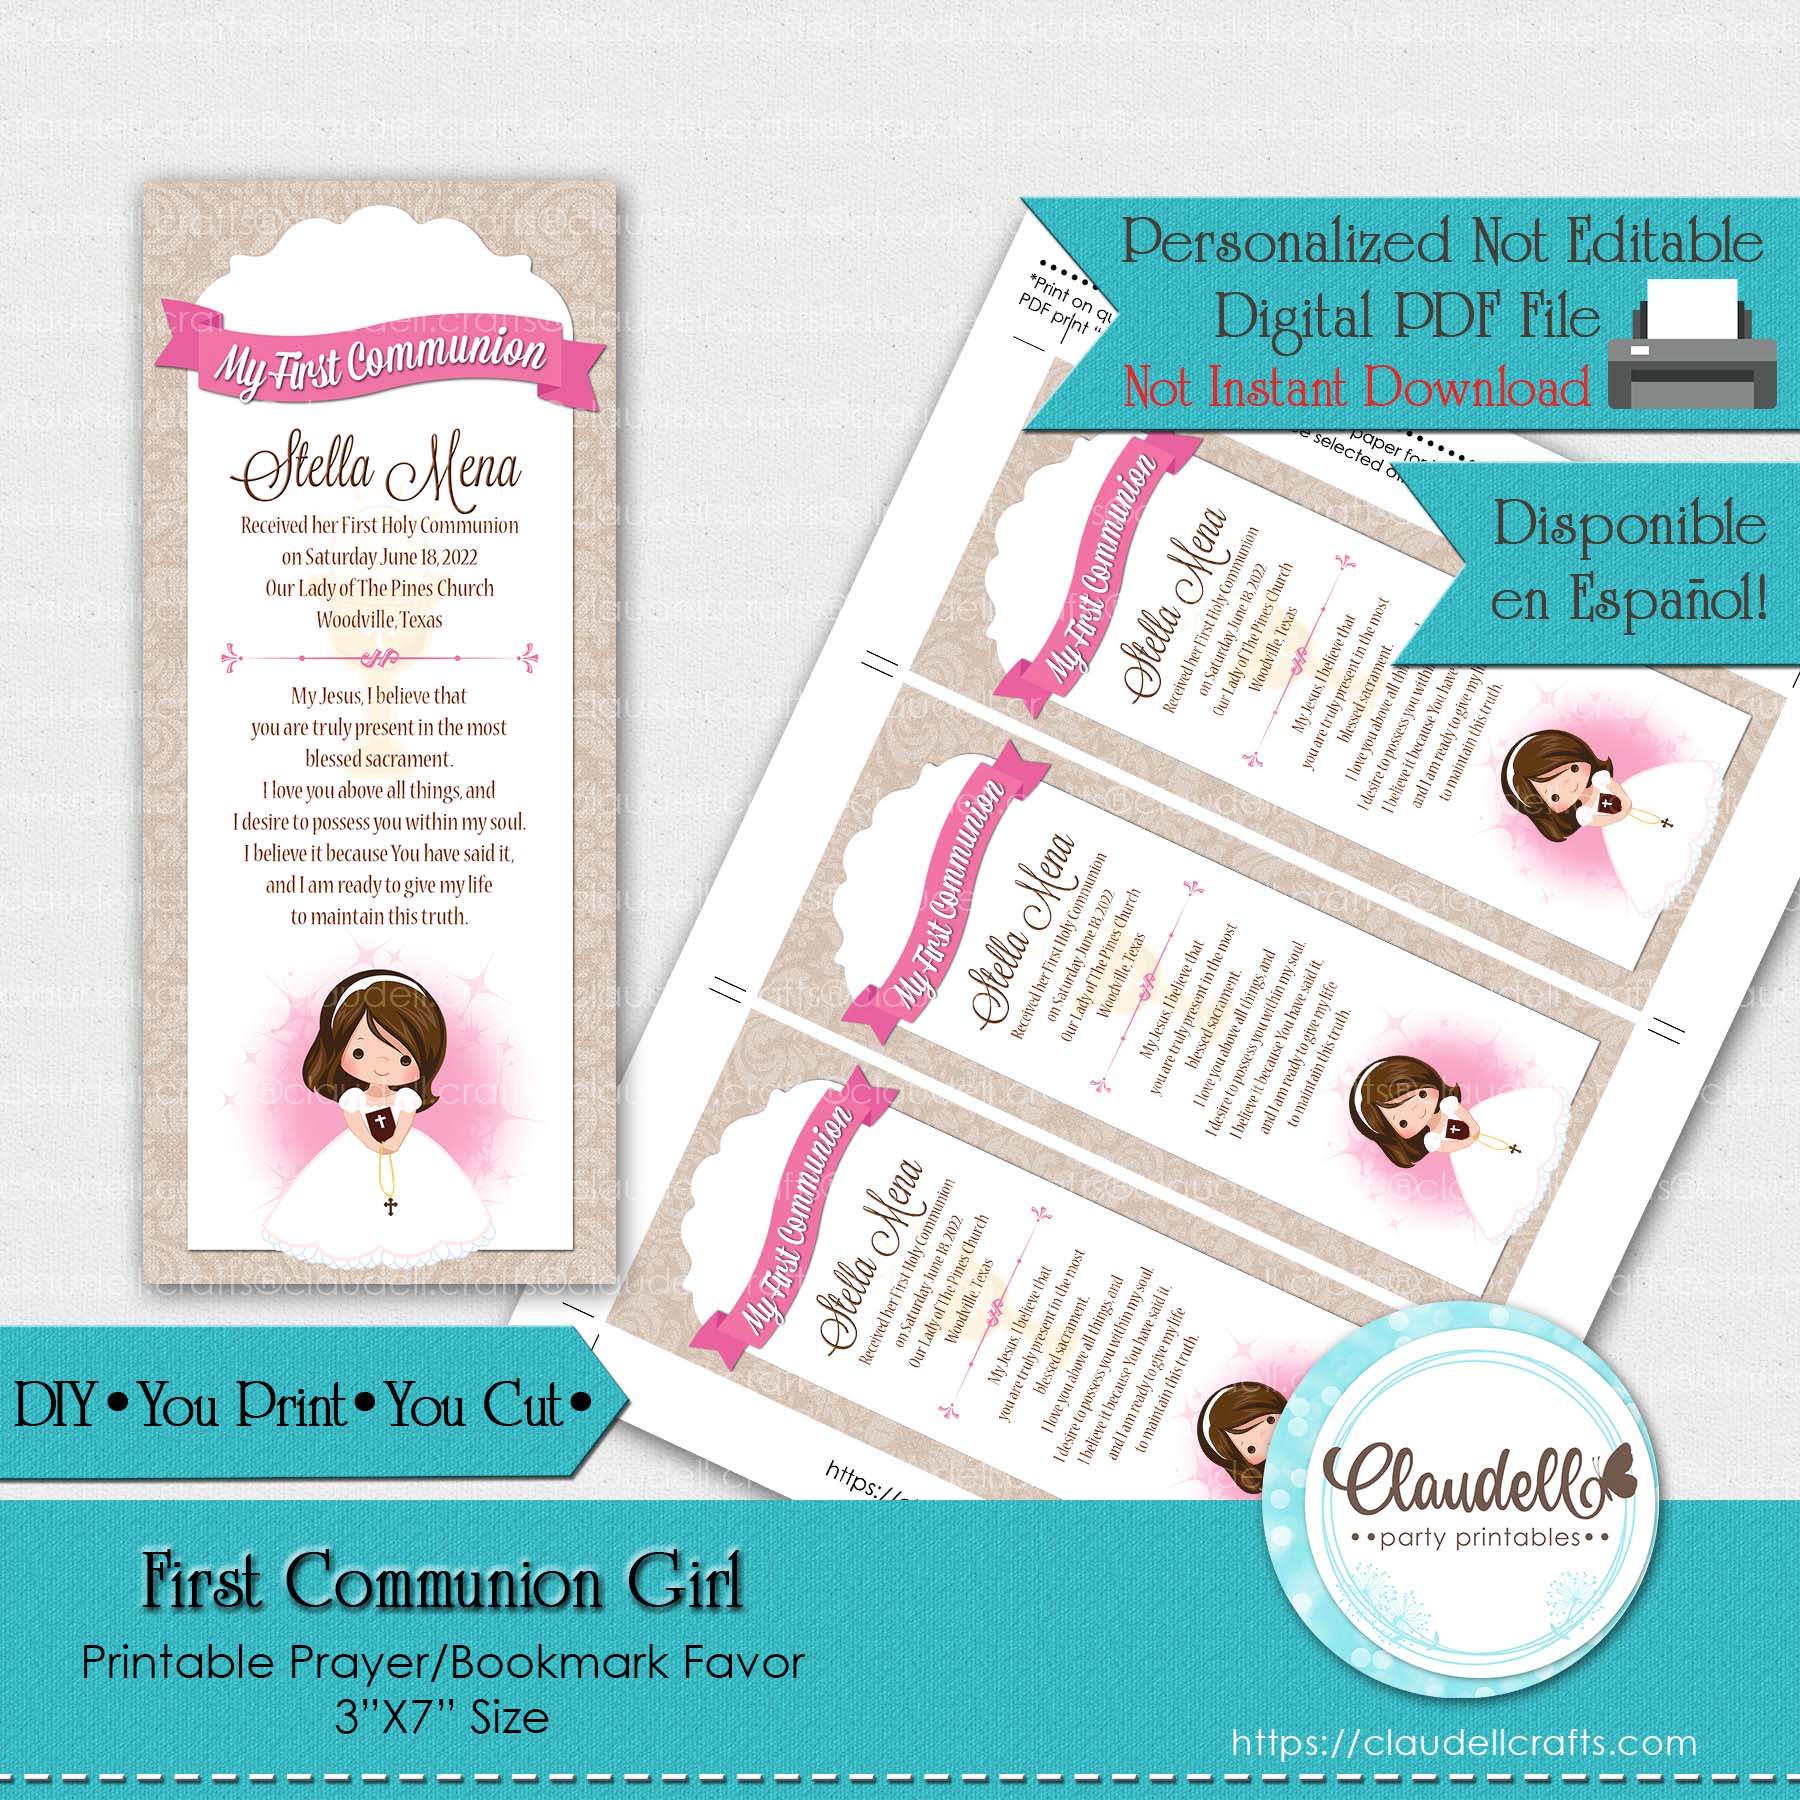 First Communion Girl Printable Prayer Card Bookmark, Oración Recuerdo Comunión Niña, Event Favors/Digital File Only